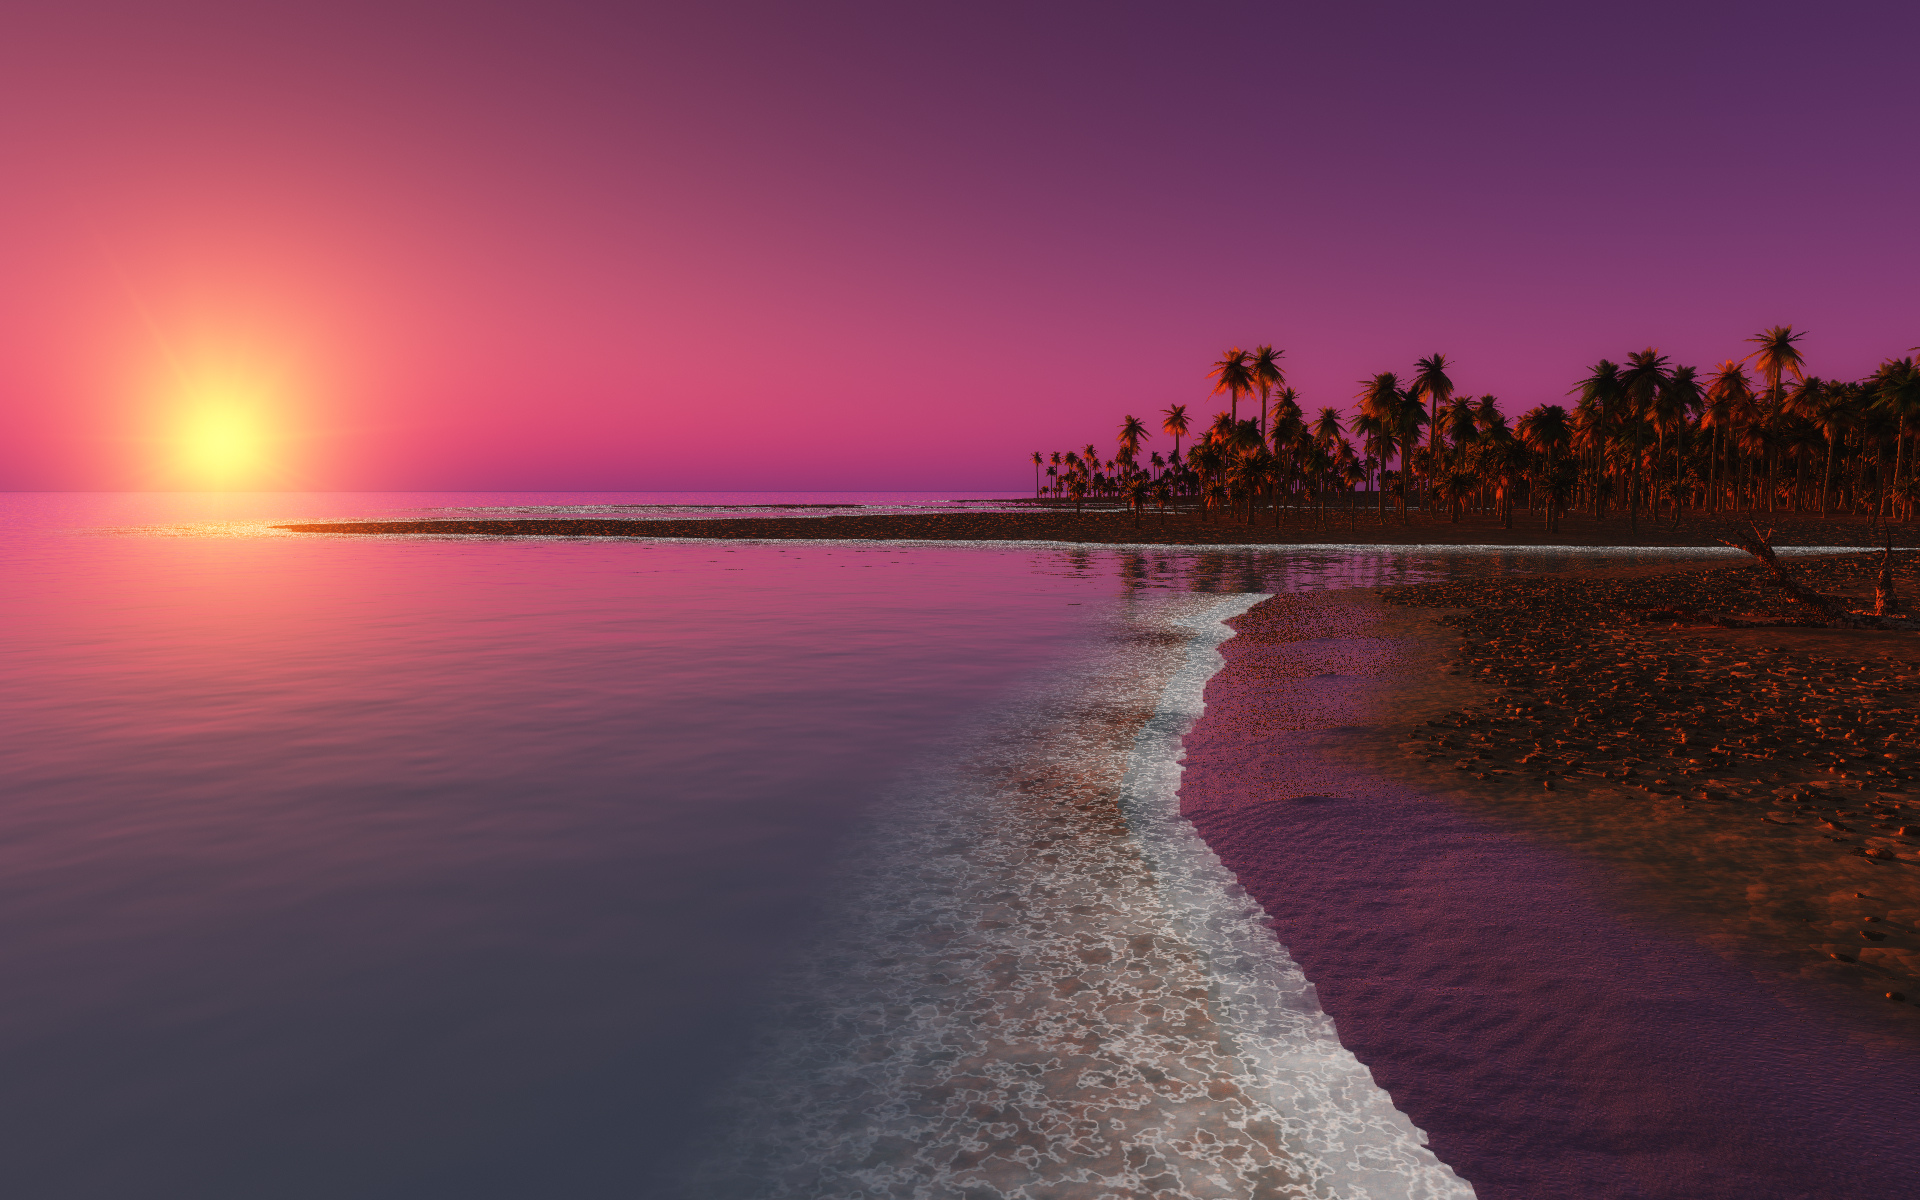 Pink Landscape Desktop Backgrounds - Wallpaper, High Definition, High